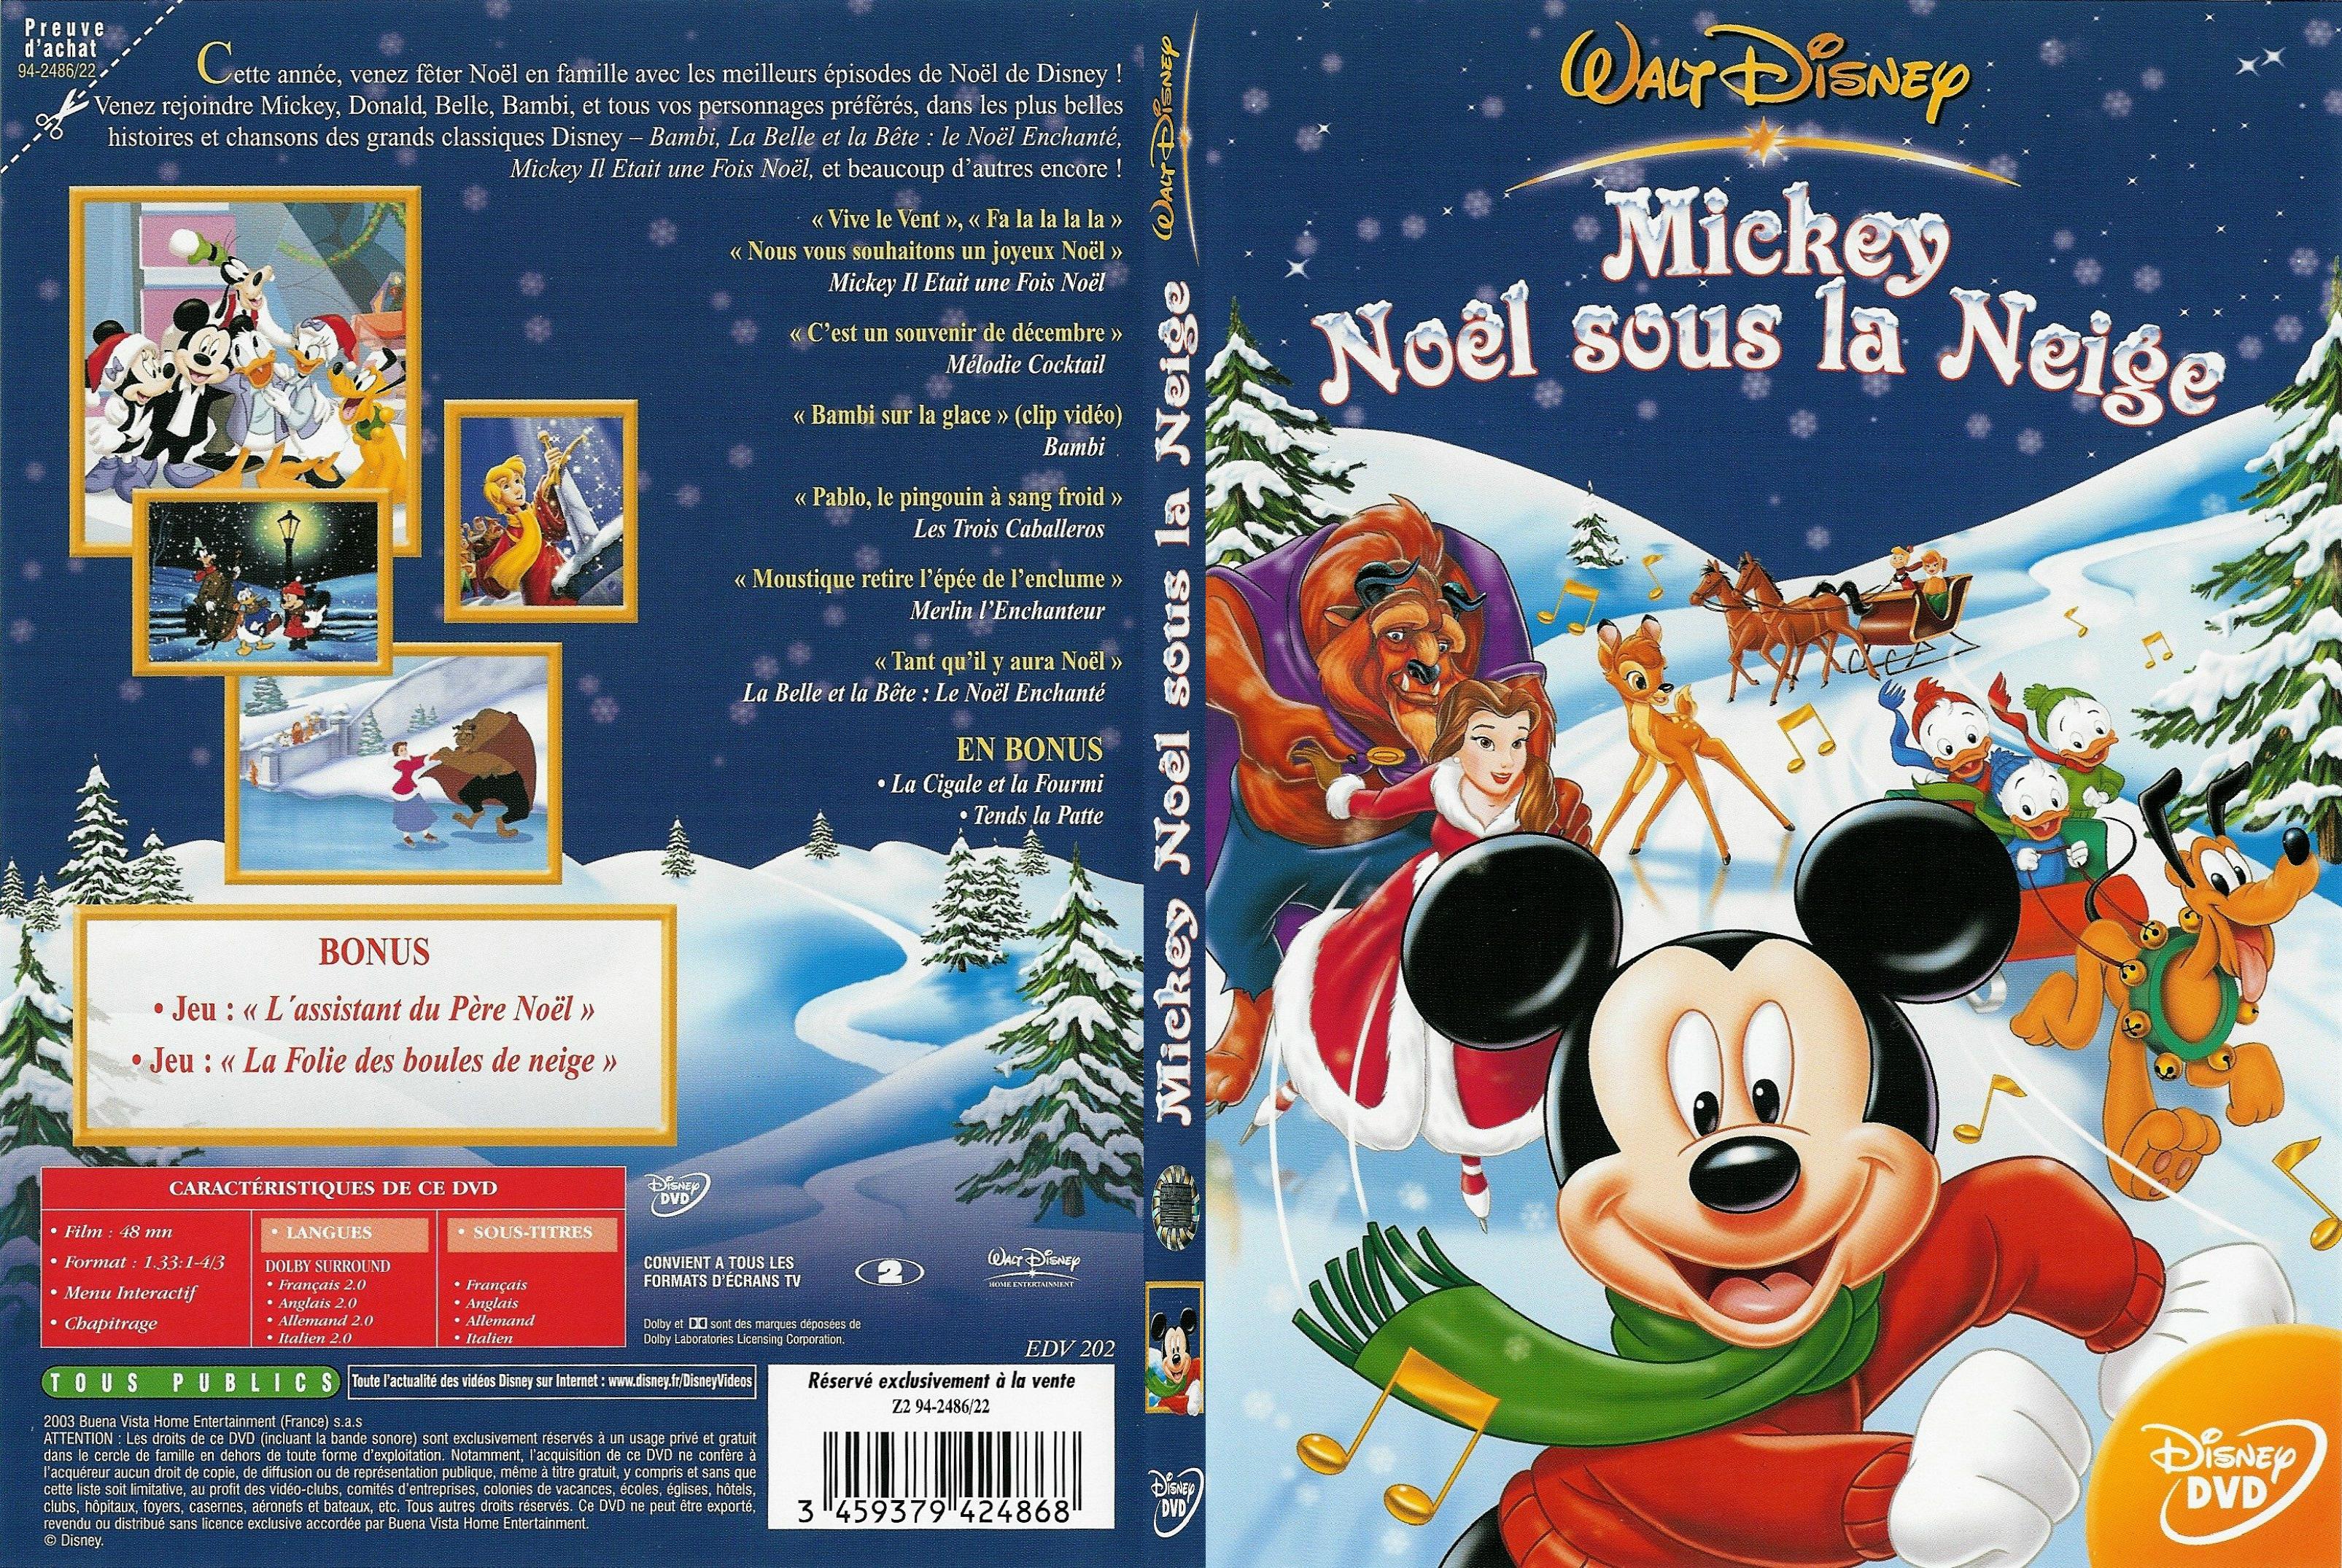 Jaquette DVD Mickey Noel sous la neige - SLIM